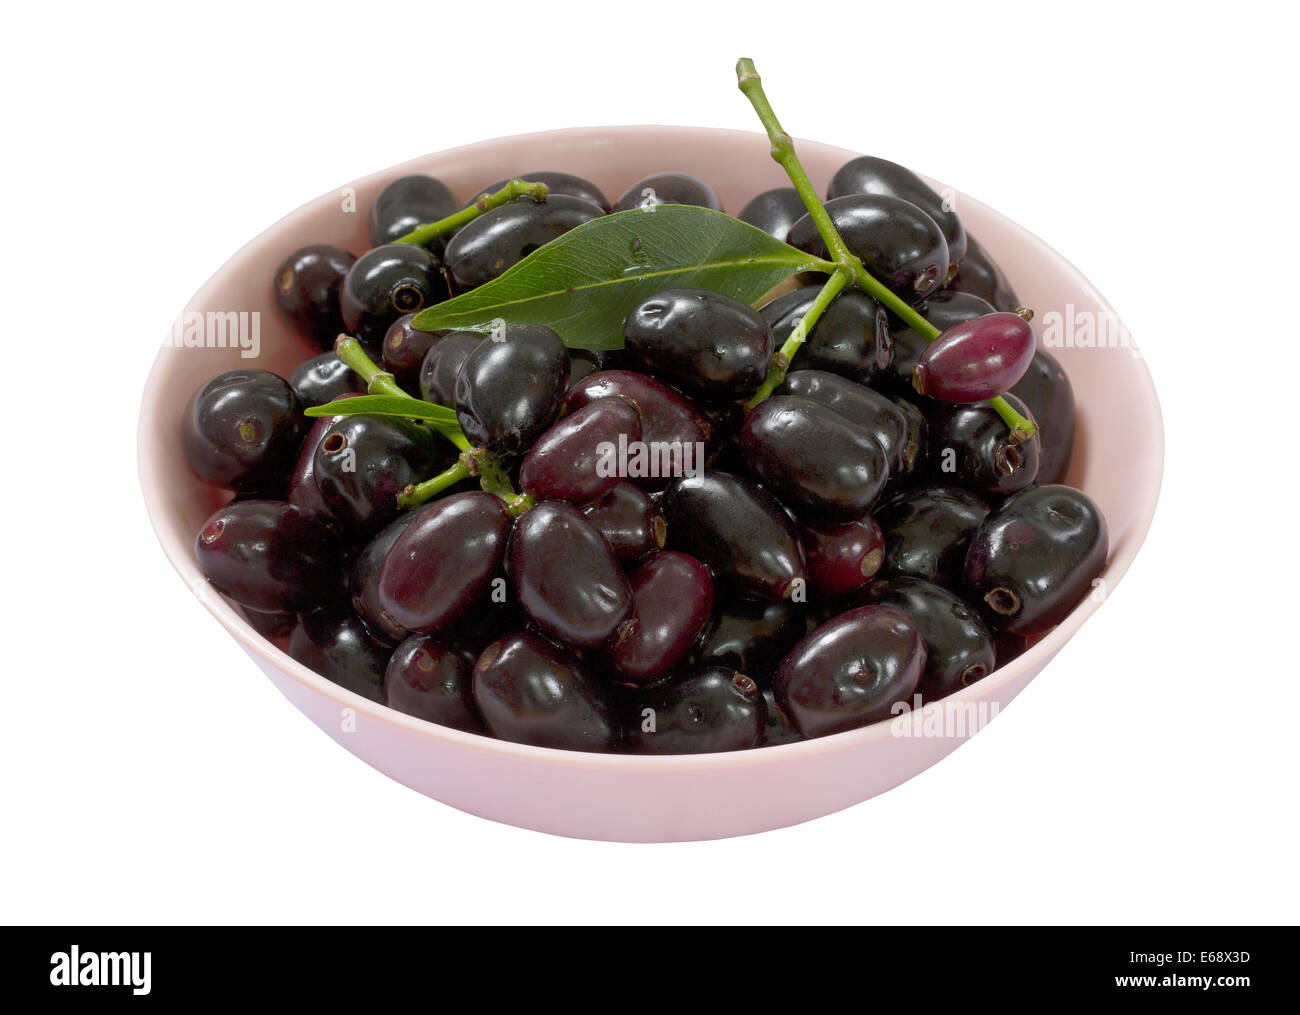 Jambolan plum, Java plum (Syzygium cumini) fruit isolated on white background Stock Photo